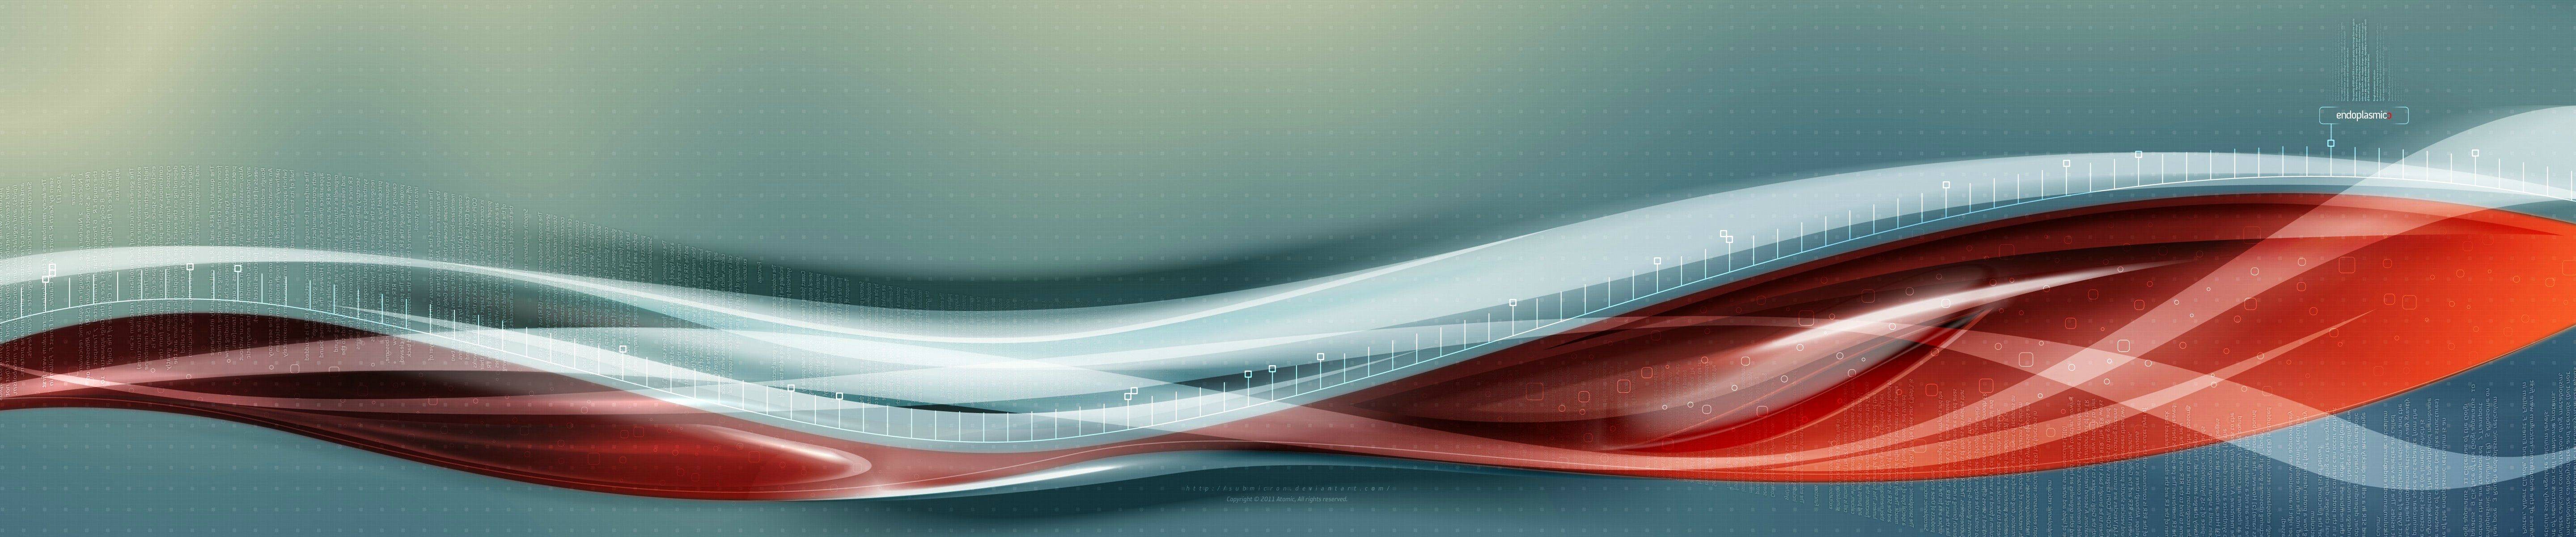 General 5760x1200 digital art shapes waveforms red biology  DNA